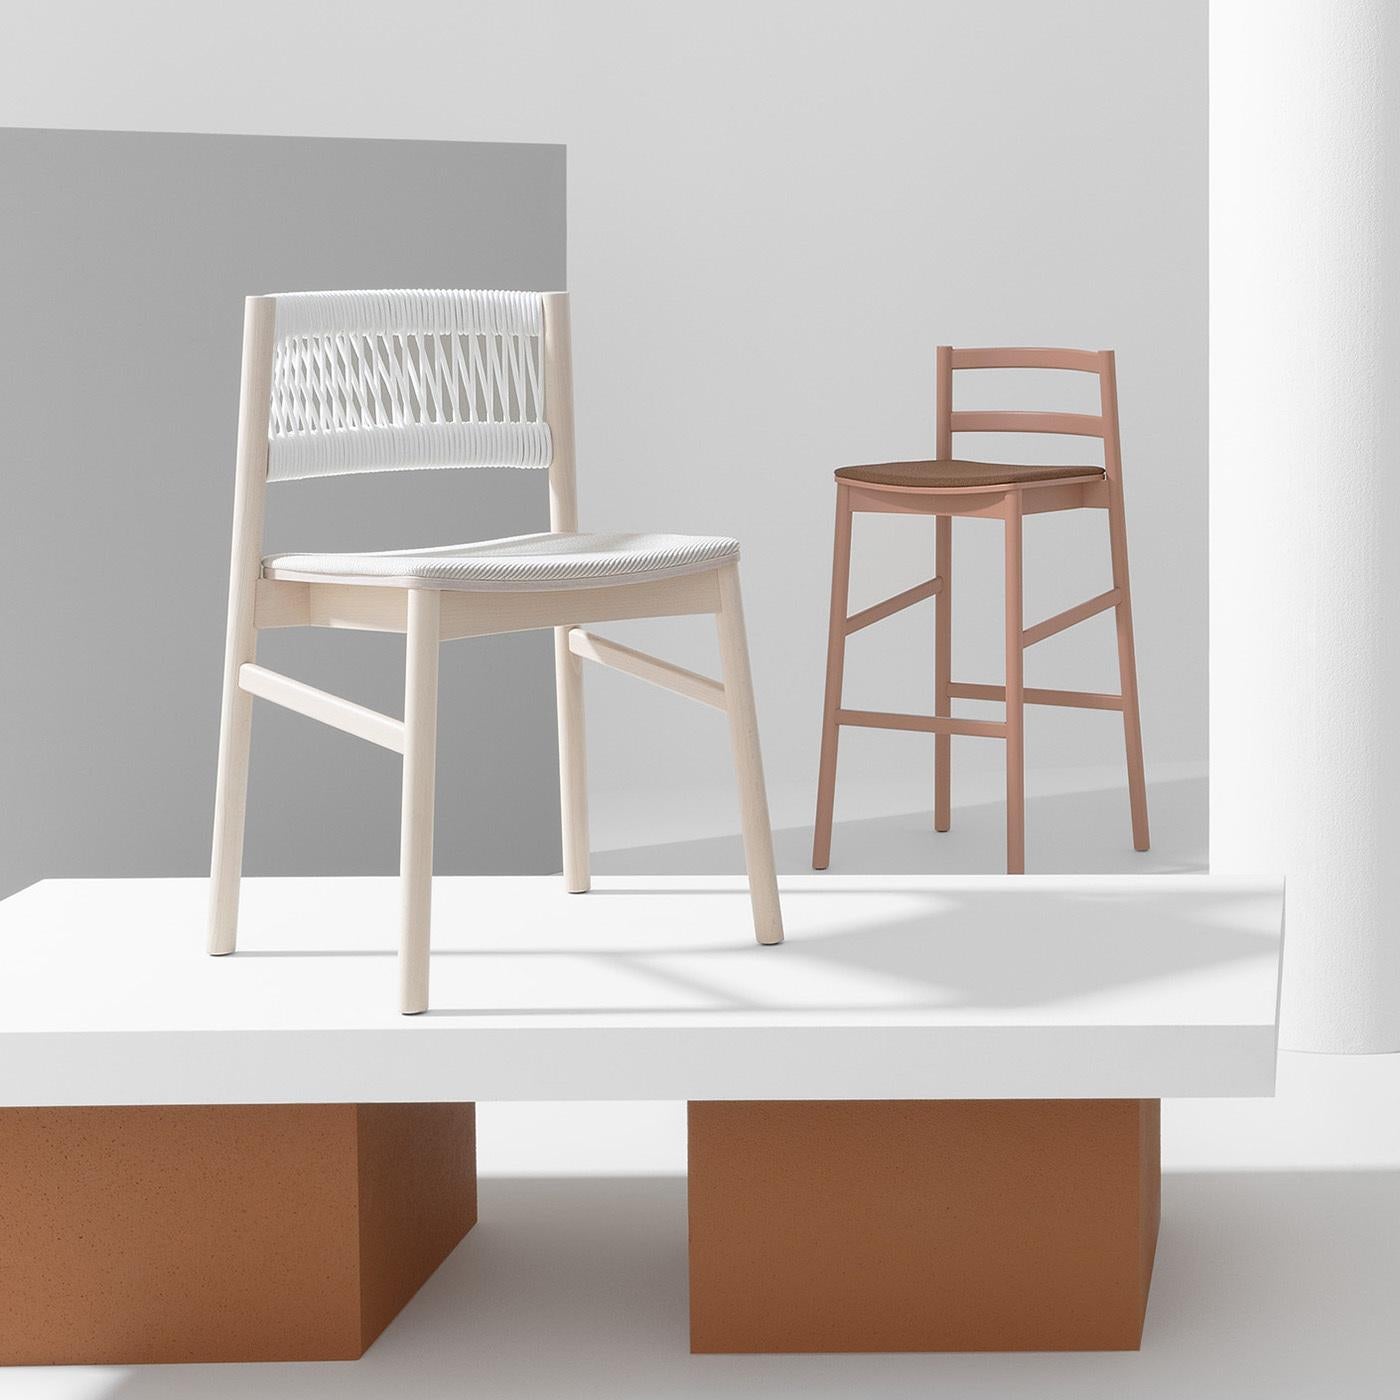 L'utilisation magistrale de matériaux de première qualité définit cette chaise exquise conçue par Emilio Nanni, un design élégant qui se marie bien avec un décor moderne aux tons neutres. La simplicité formelle de la structure en hêtre massif est